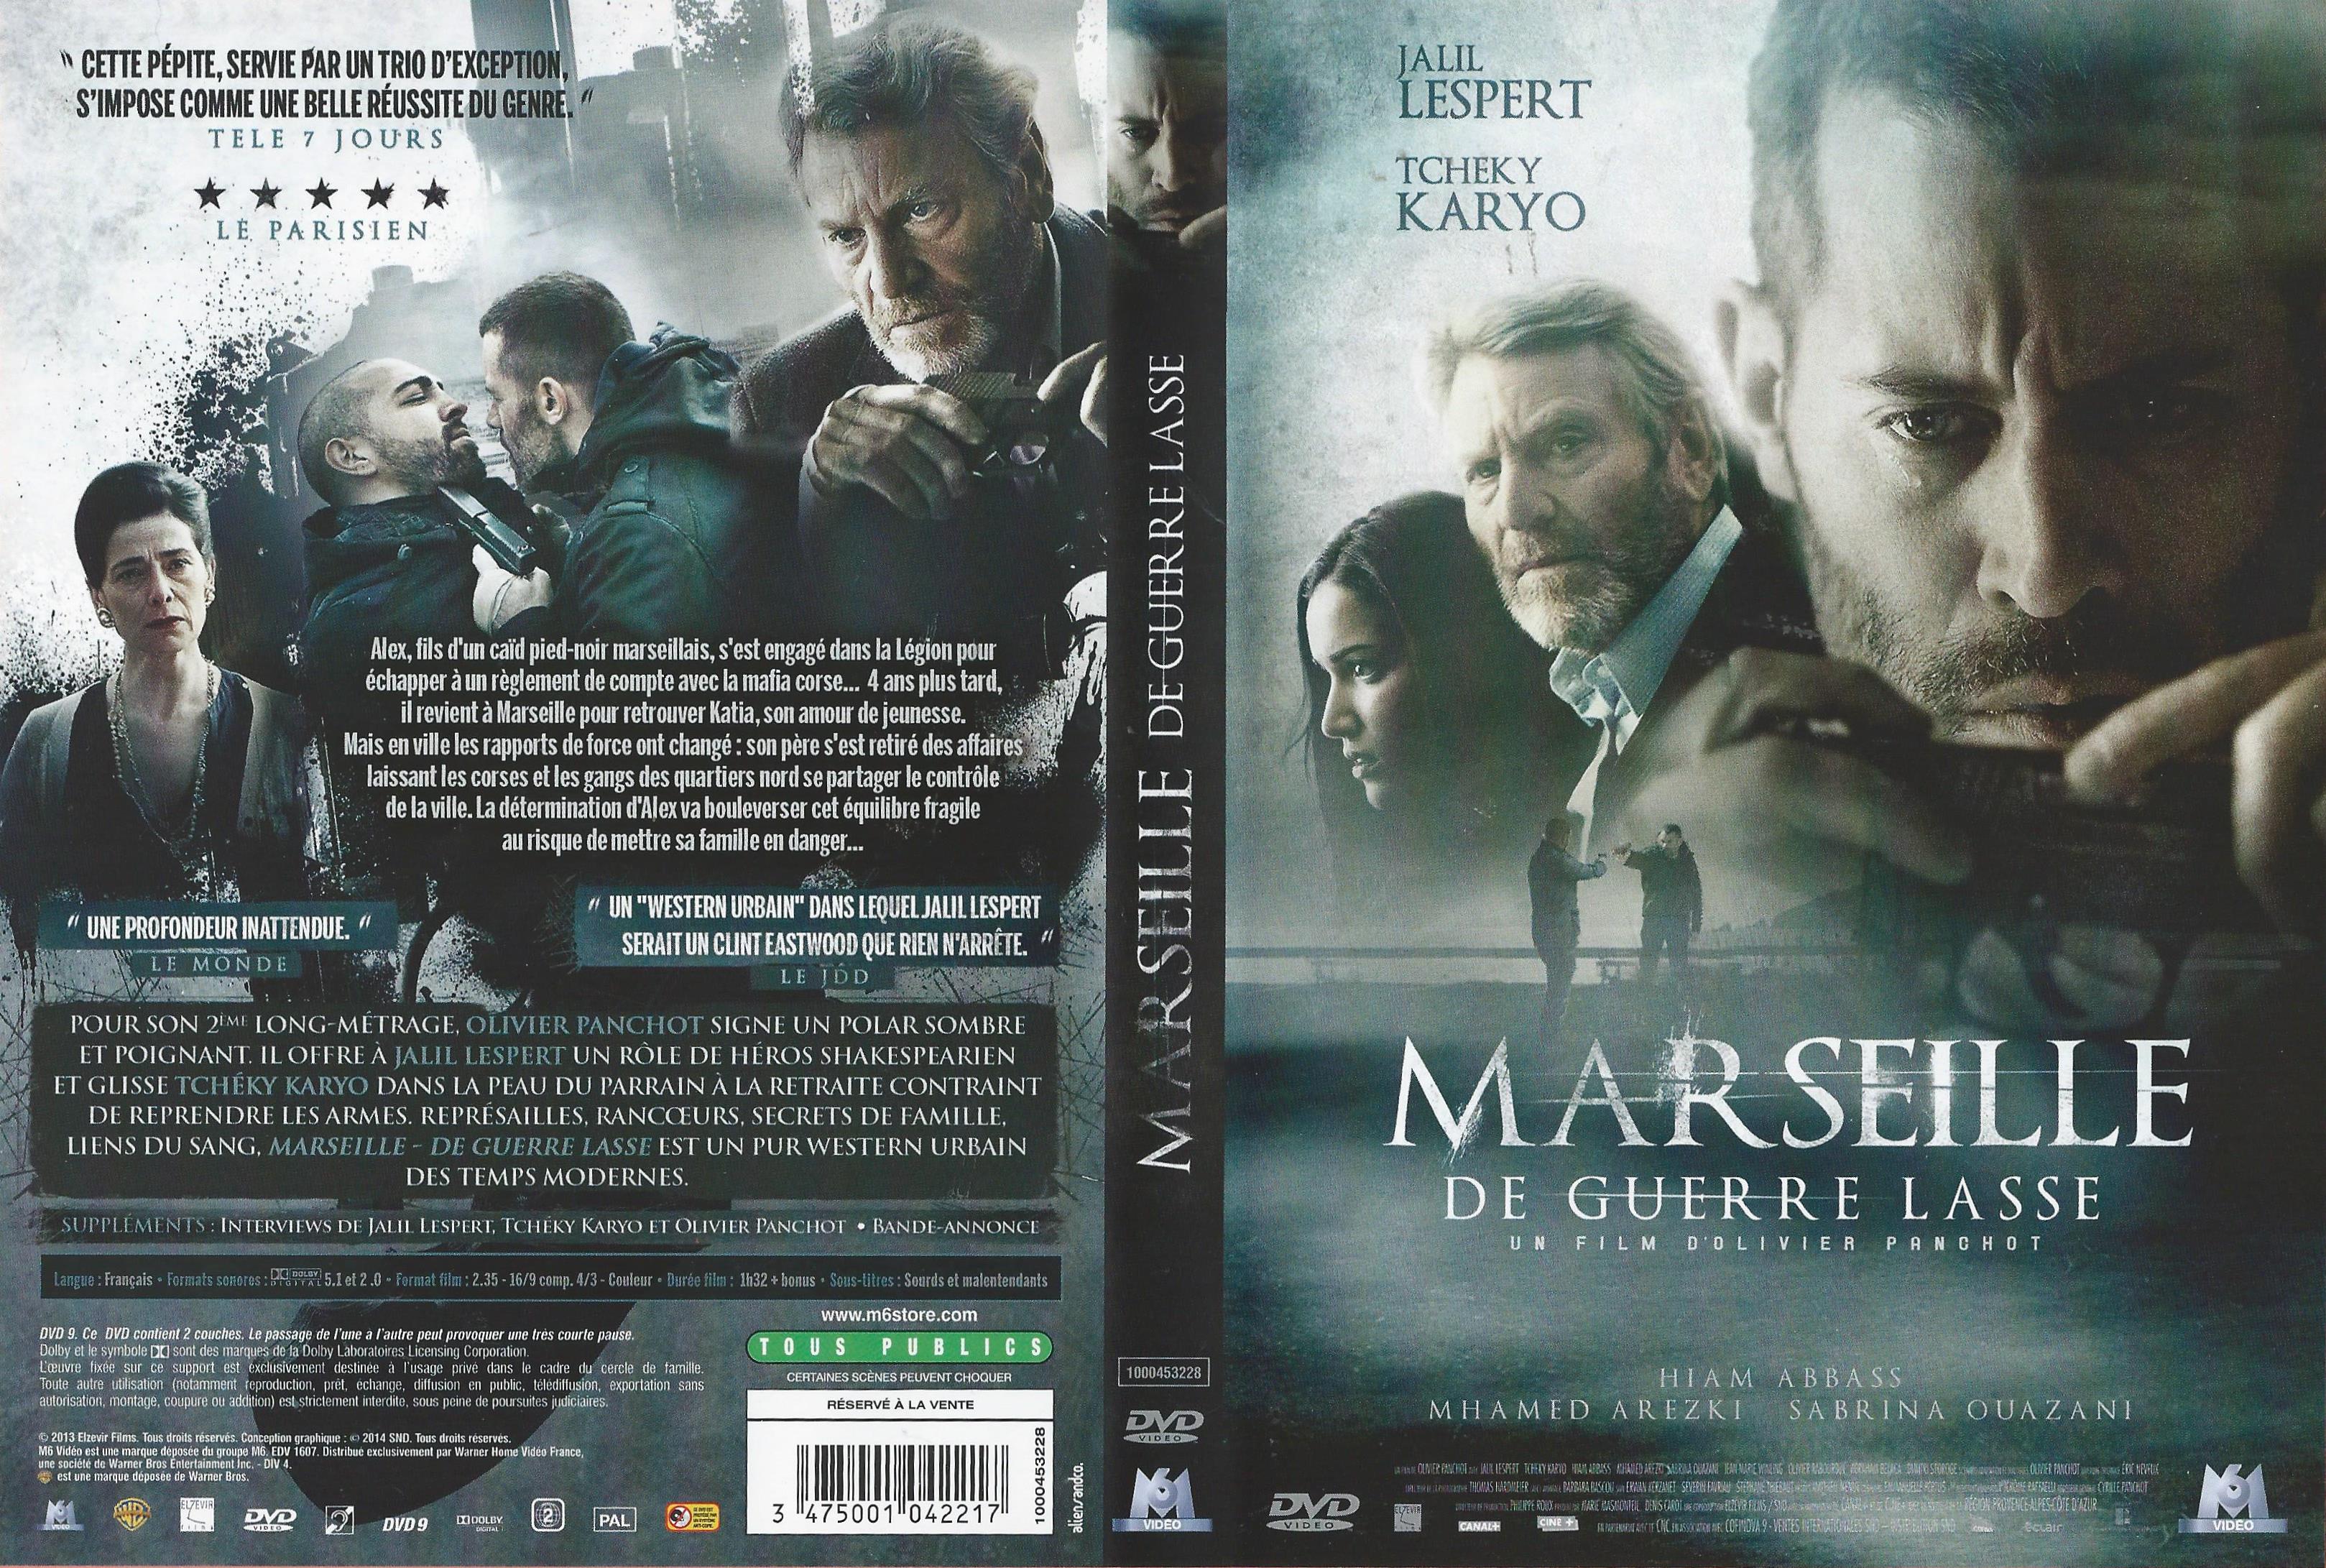 Jaquette DVD Marseille de guerre lasse